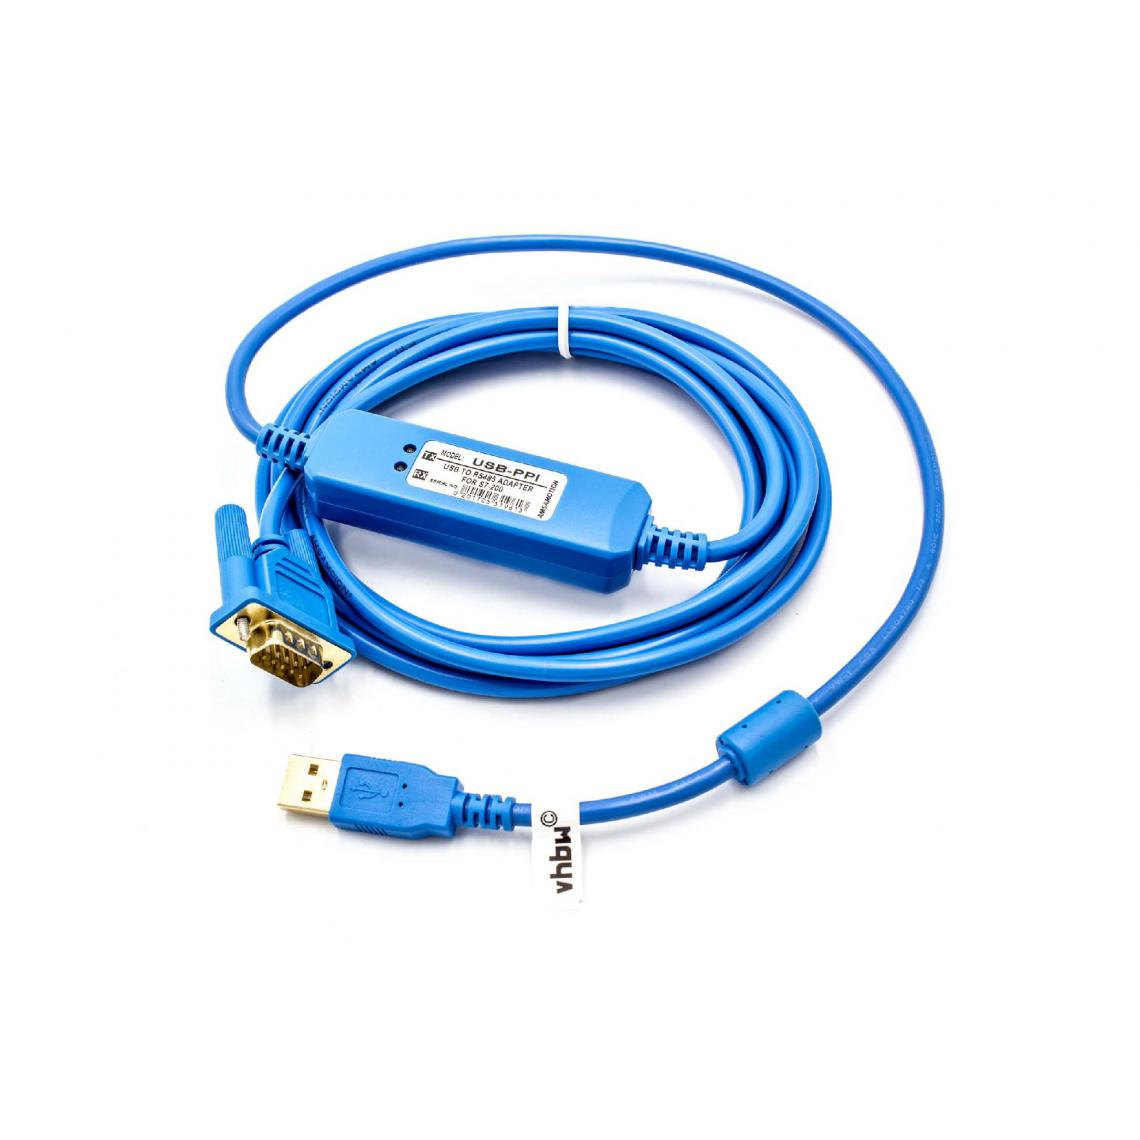 Vhbw - vhbw Câble USB de programmation PLC remplacement pour Siemens 6ES7 901-3DB30-0XA0 pour radio - Adaptateur interface sérielle + CD de pilotes, bleu - Autre appareil de mesure